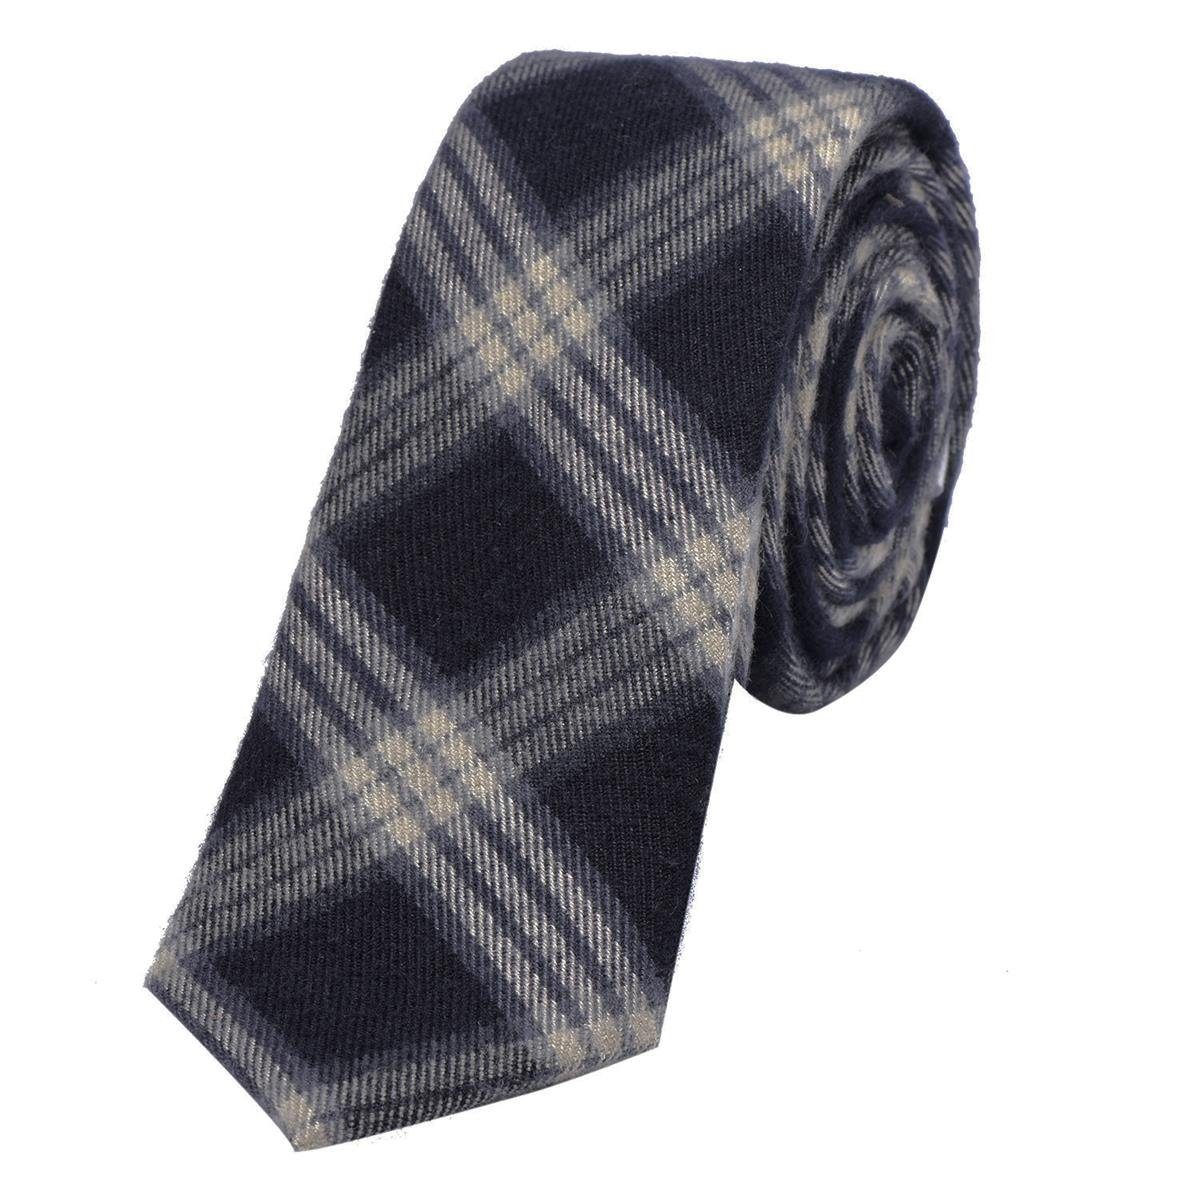 DonDon Krawatte Herren Krawatte 6 cm einfarbig kariert und gepunkt (Packung, 1-St., 1x Krawatte) Baumwolle, verschiedene Muster, für Büro oder festliche Veranstaltungen dunkelblau-creme kariert